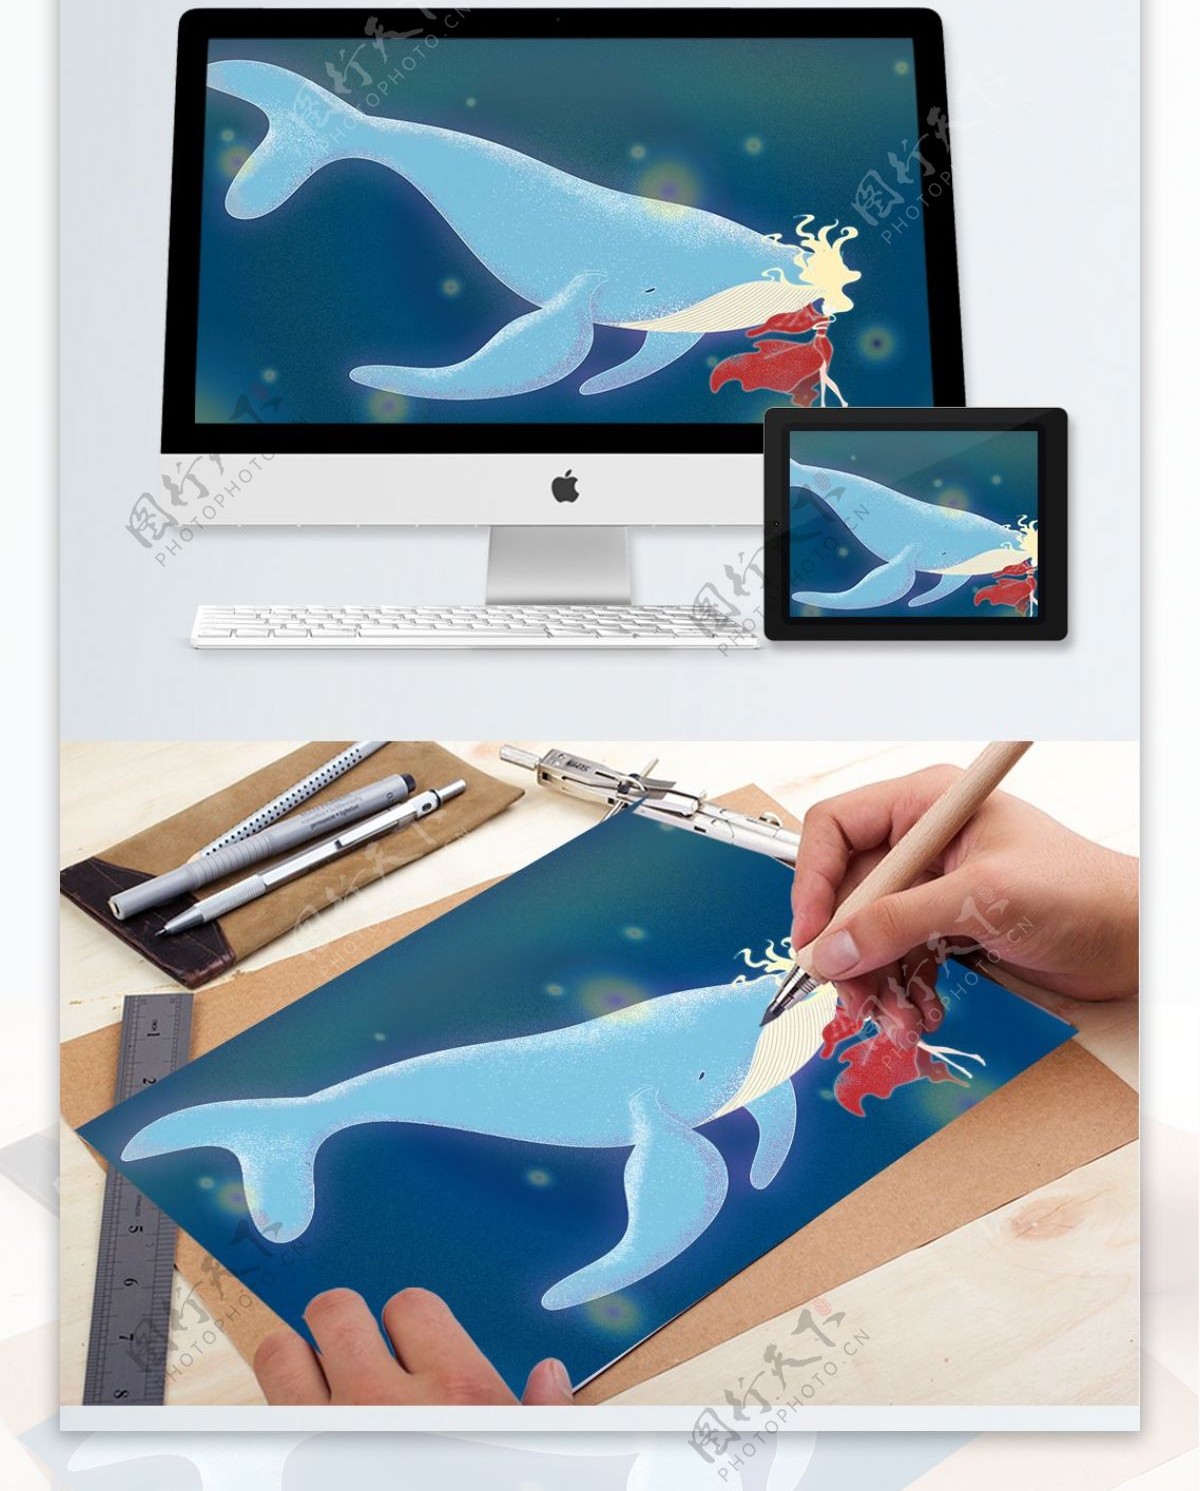 深海遇鲸主题治愈系插画鲸鱼与女孩